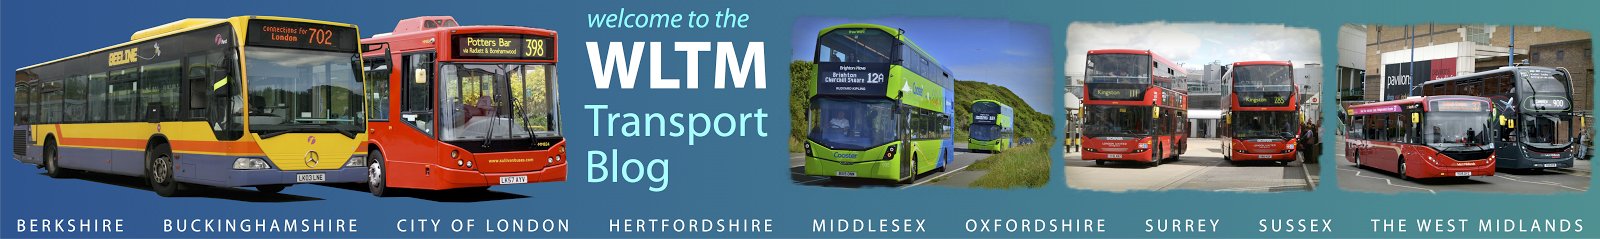 WLTM Transport Blog